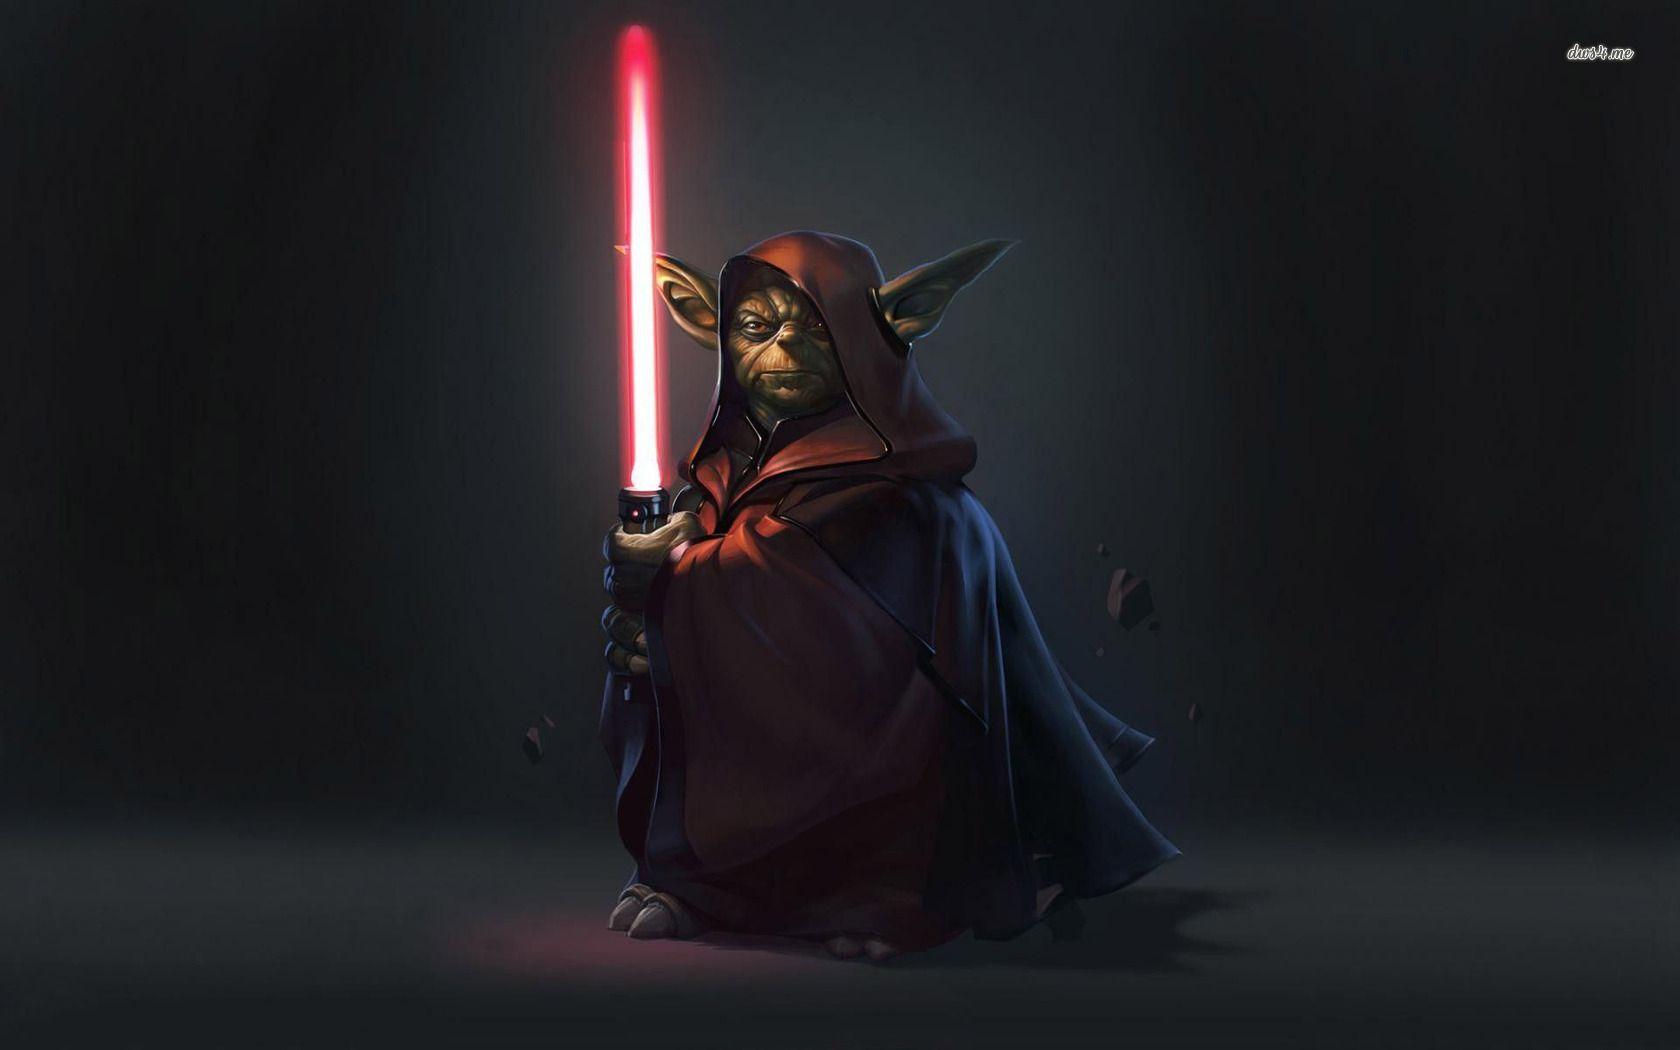 Hình nền 1680x1050 Yoda on the dark side - Hình nền nghệ thuật số